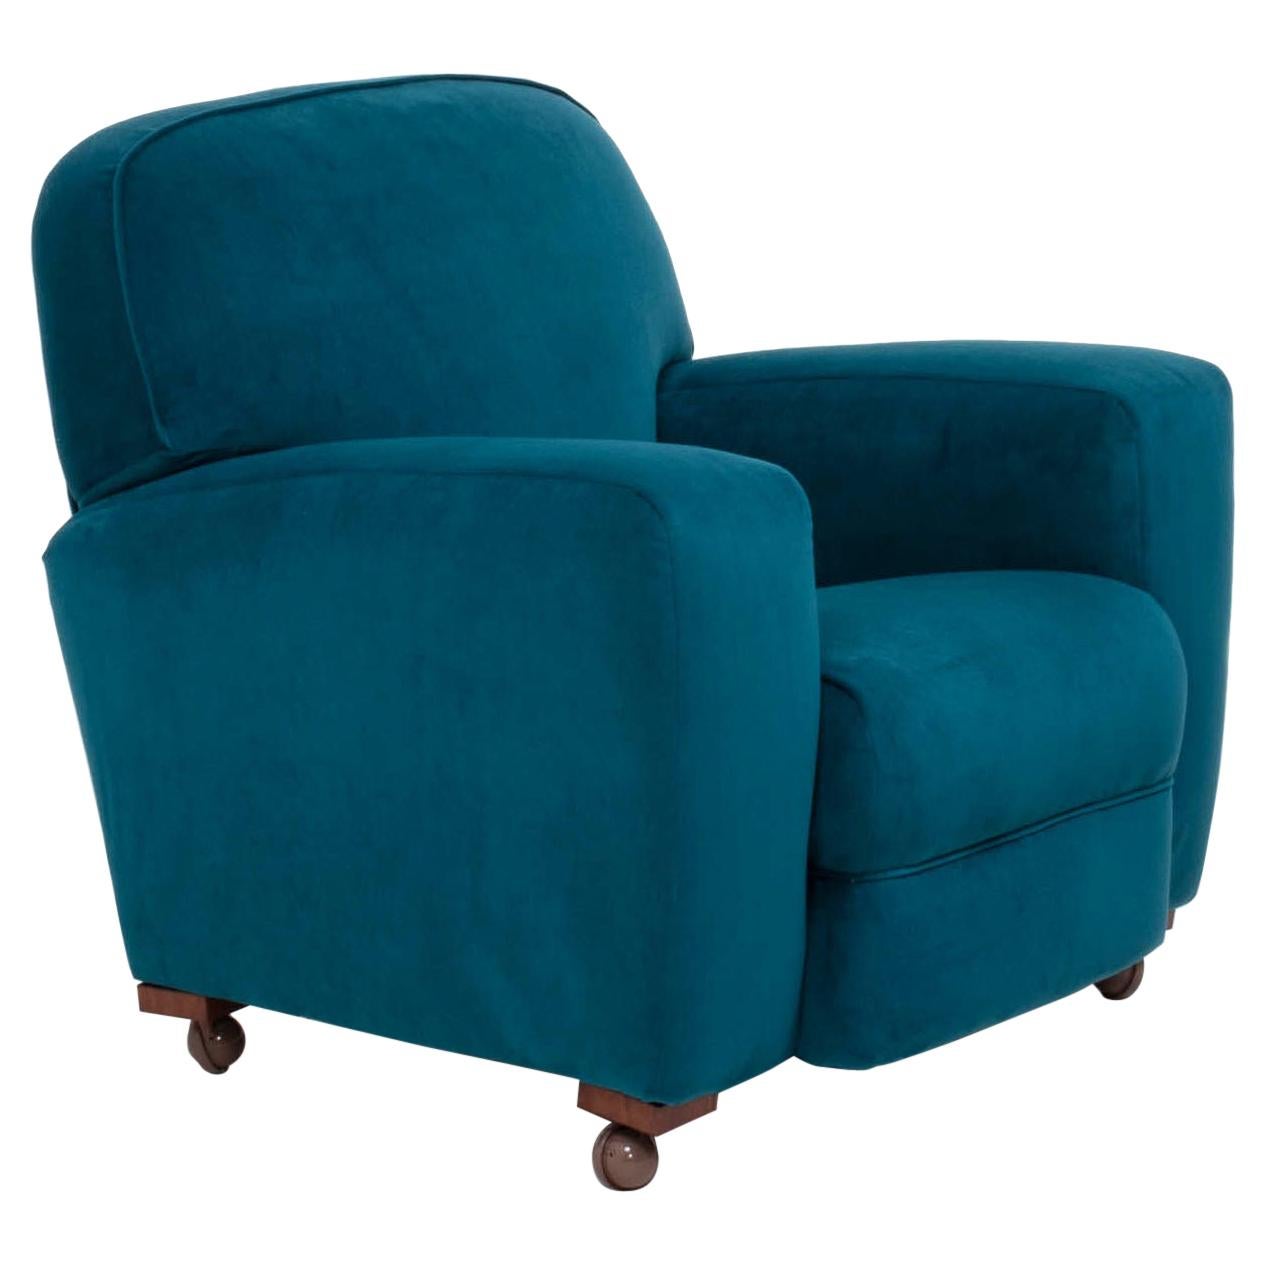 1930s Art Deco Curved Blue Teal Velvet Armchair